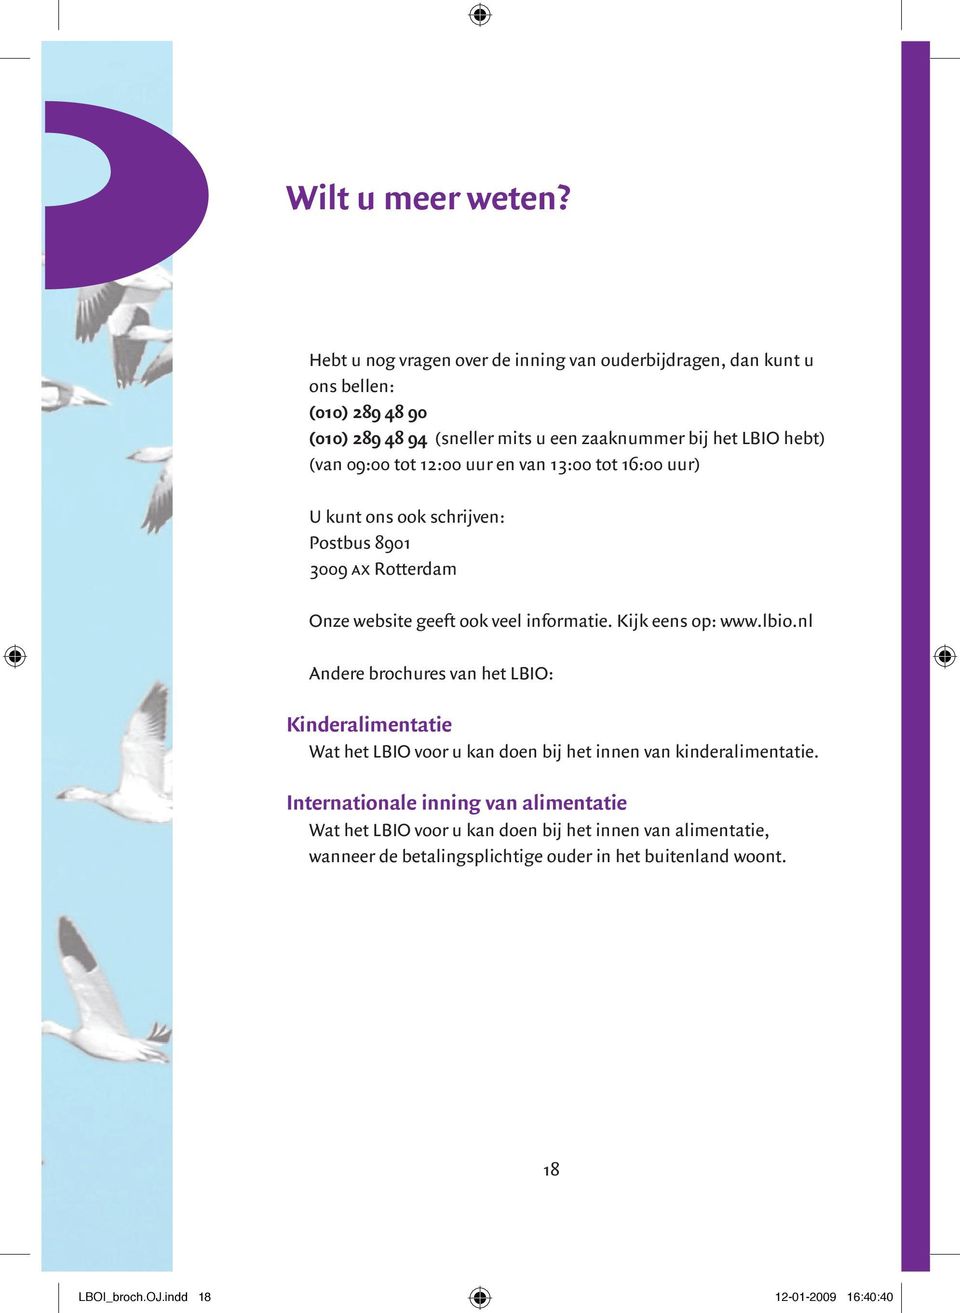 09:00 tot 12:00 uur en van 13:00 tot 16:00 uur) U kunt ons ook schrijven: Postbus 8901 3009 ax Rotterdam Onze website geeft ook veel informatie. Kijk eens op: www.lbio.